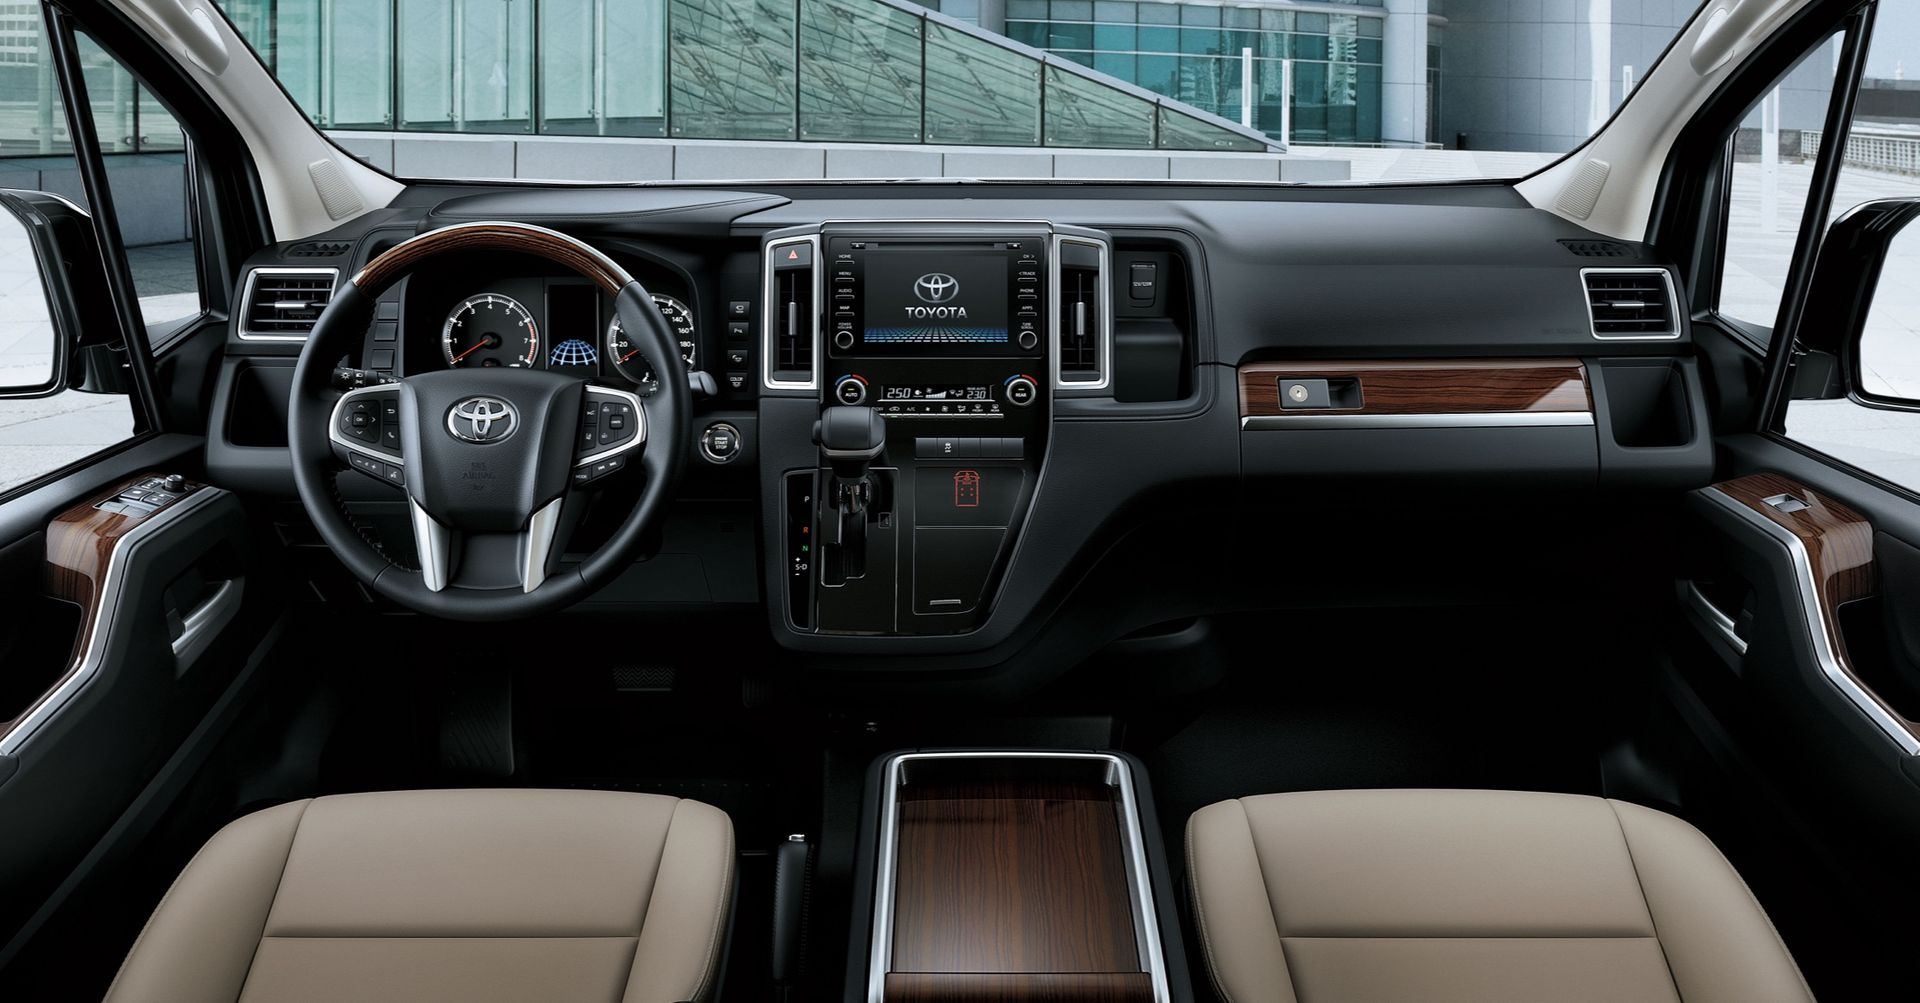 Toyota Granvia 2022 interior dashboard